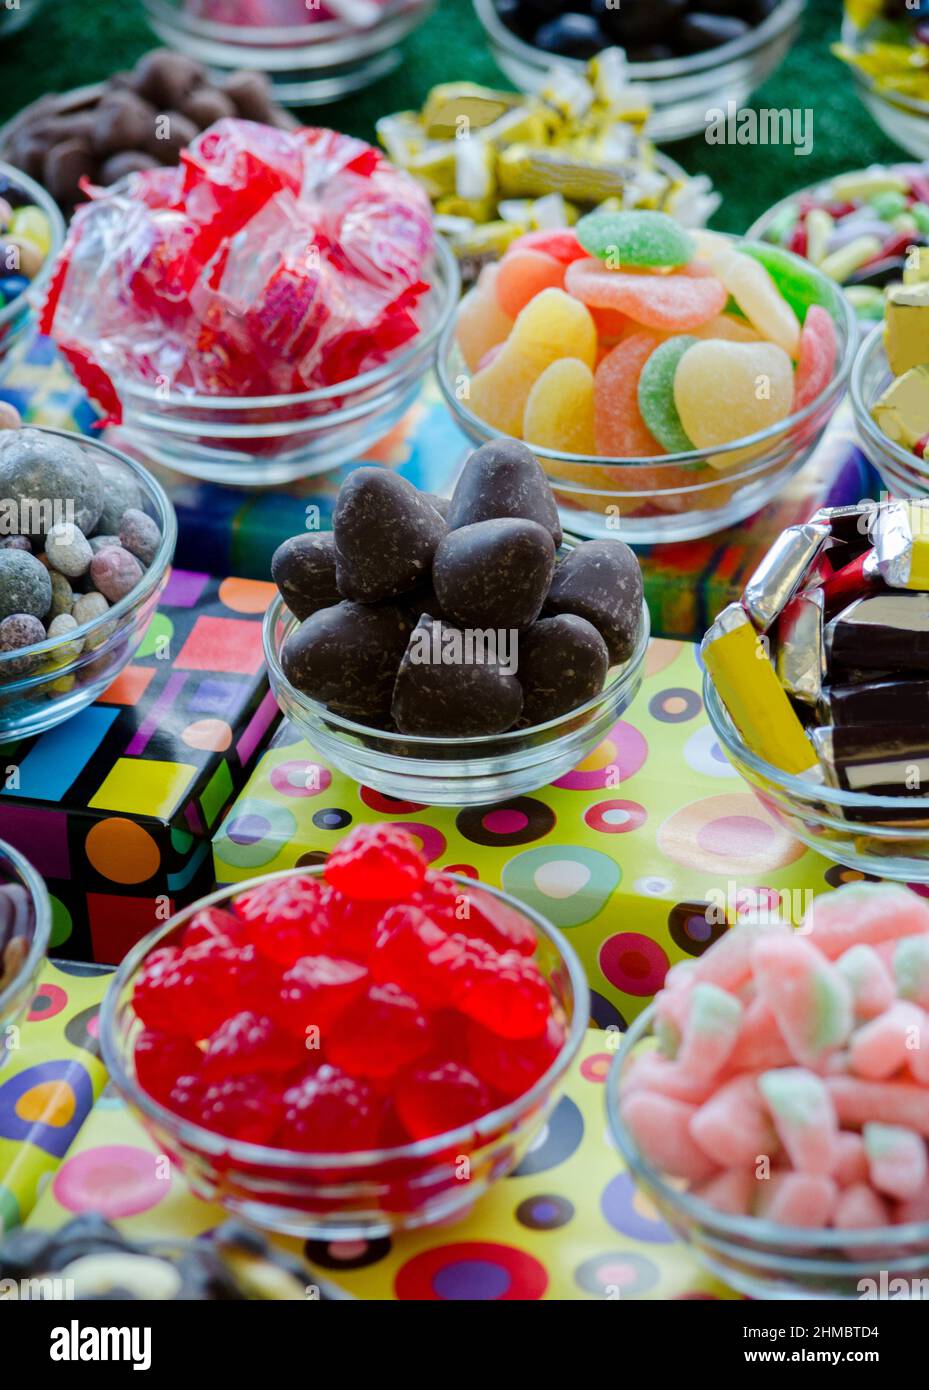 Eine verführerische Auswahl an Süßigkeiten von Schokolade über Kauartikel und harte Bonbons bis hin zu cremigen Bonbons Stockfoto